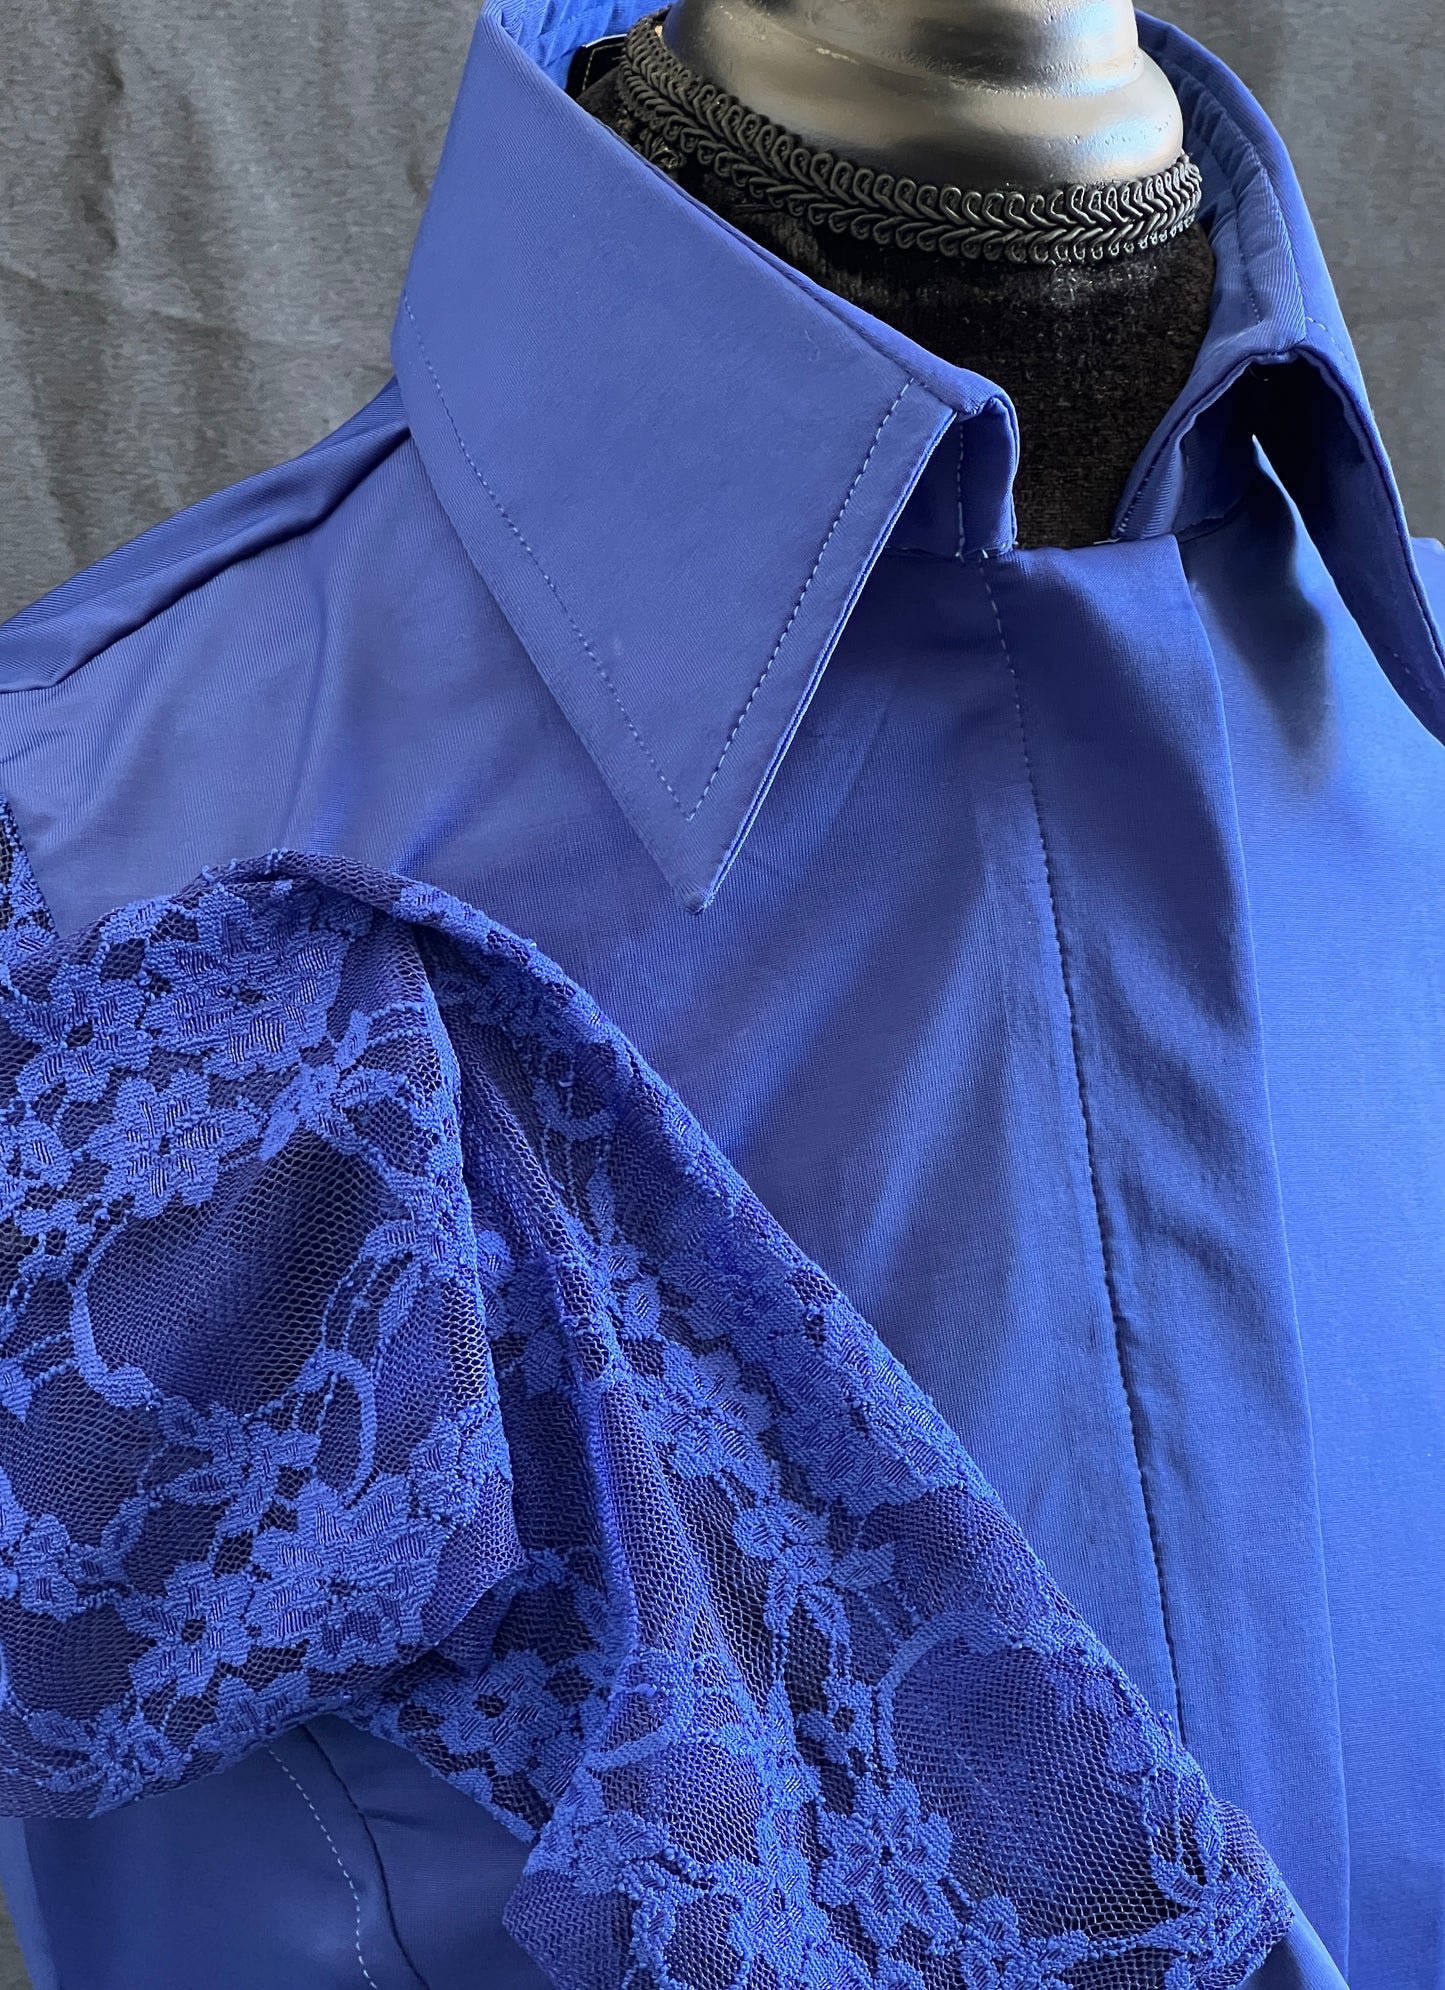 Royal Lace Sleeves Hidden Zipper Light Weight Fitted Shirt